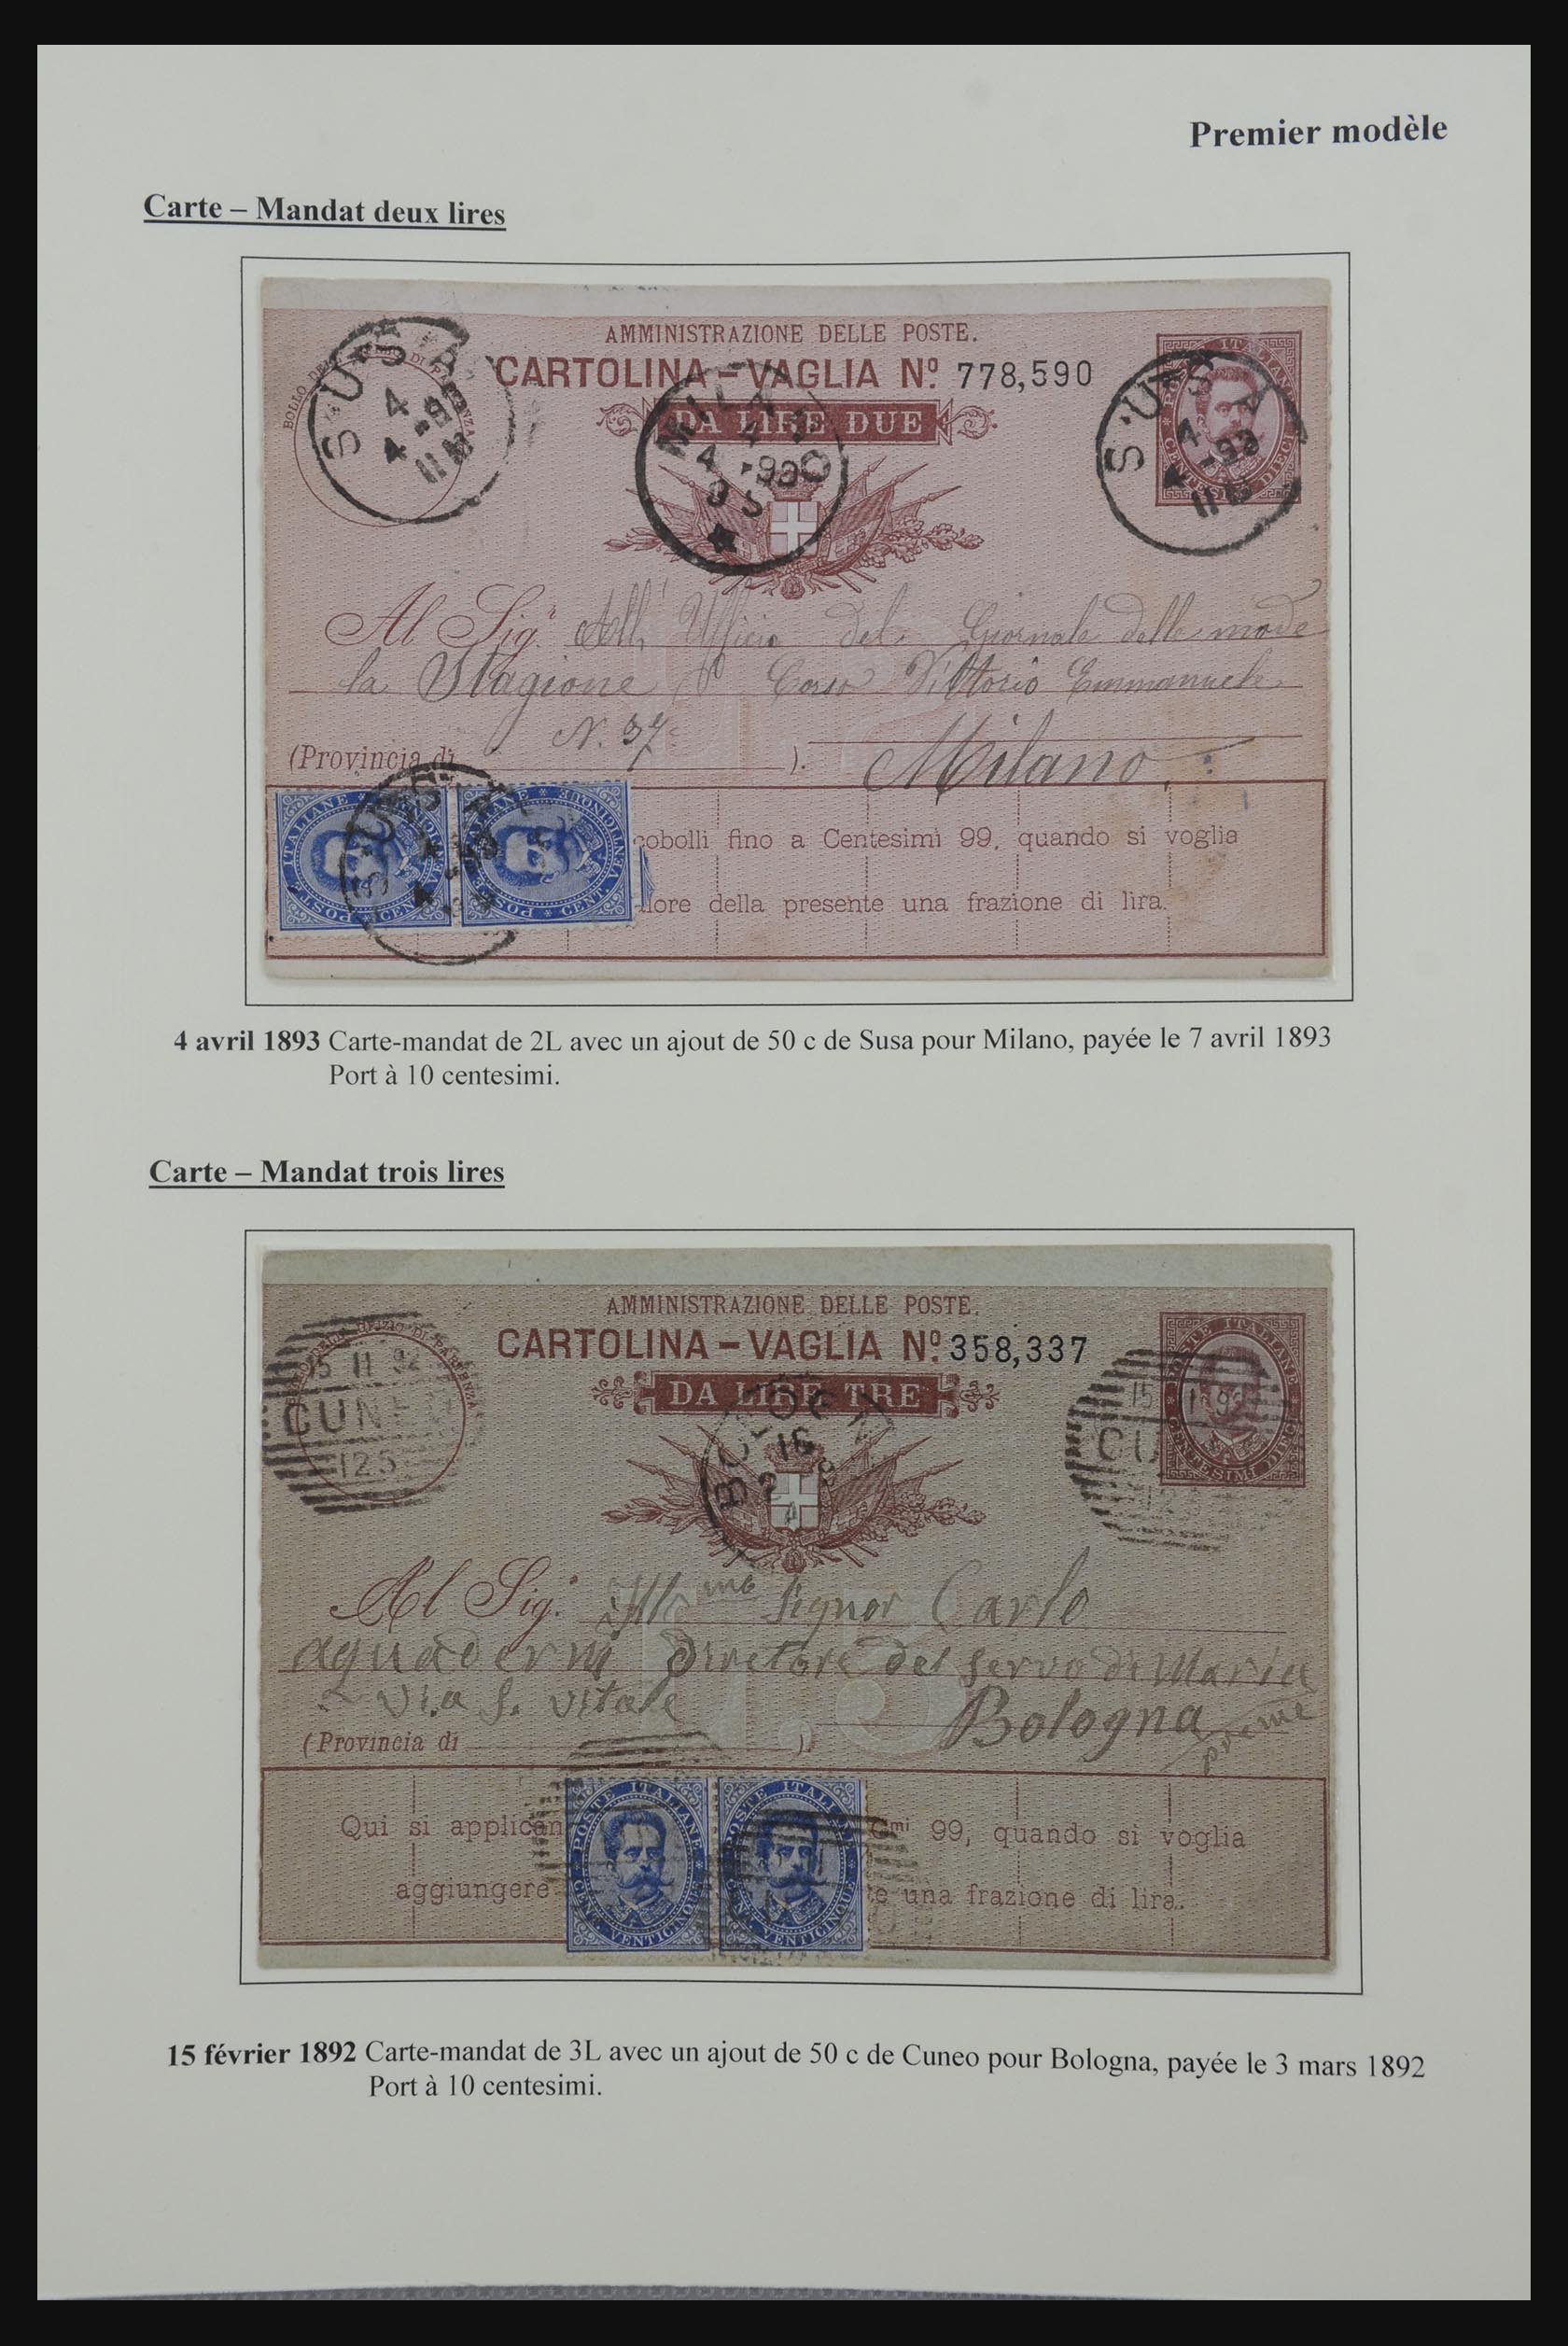 32243 004 - 32243 Italië postbewijskaarten 1892-1902.